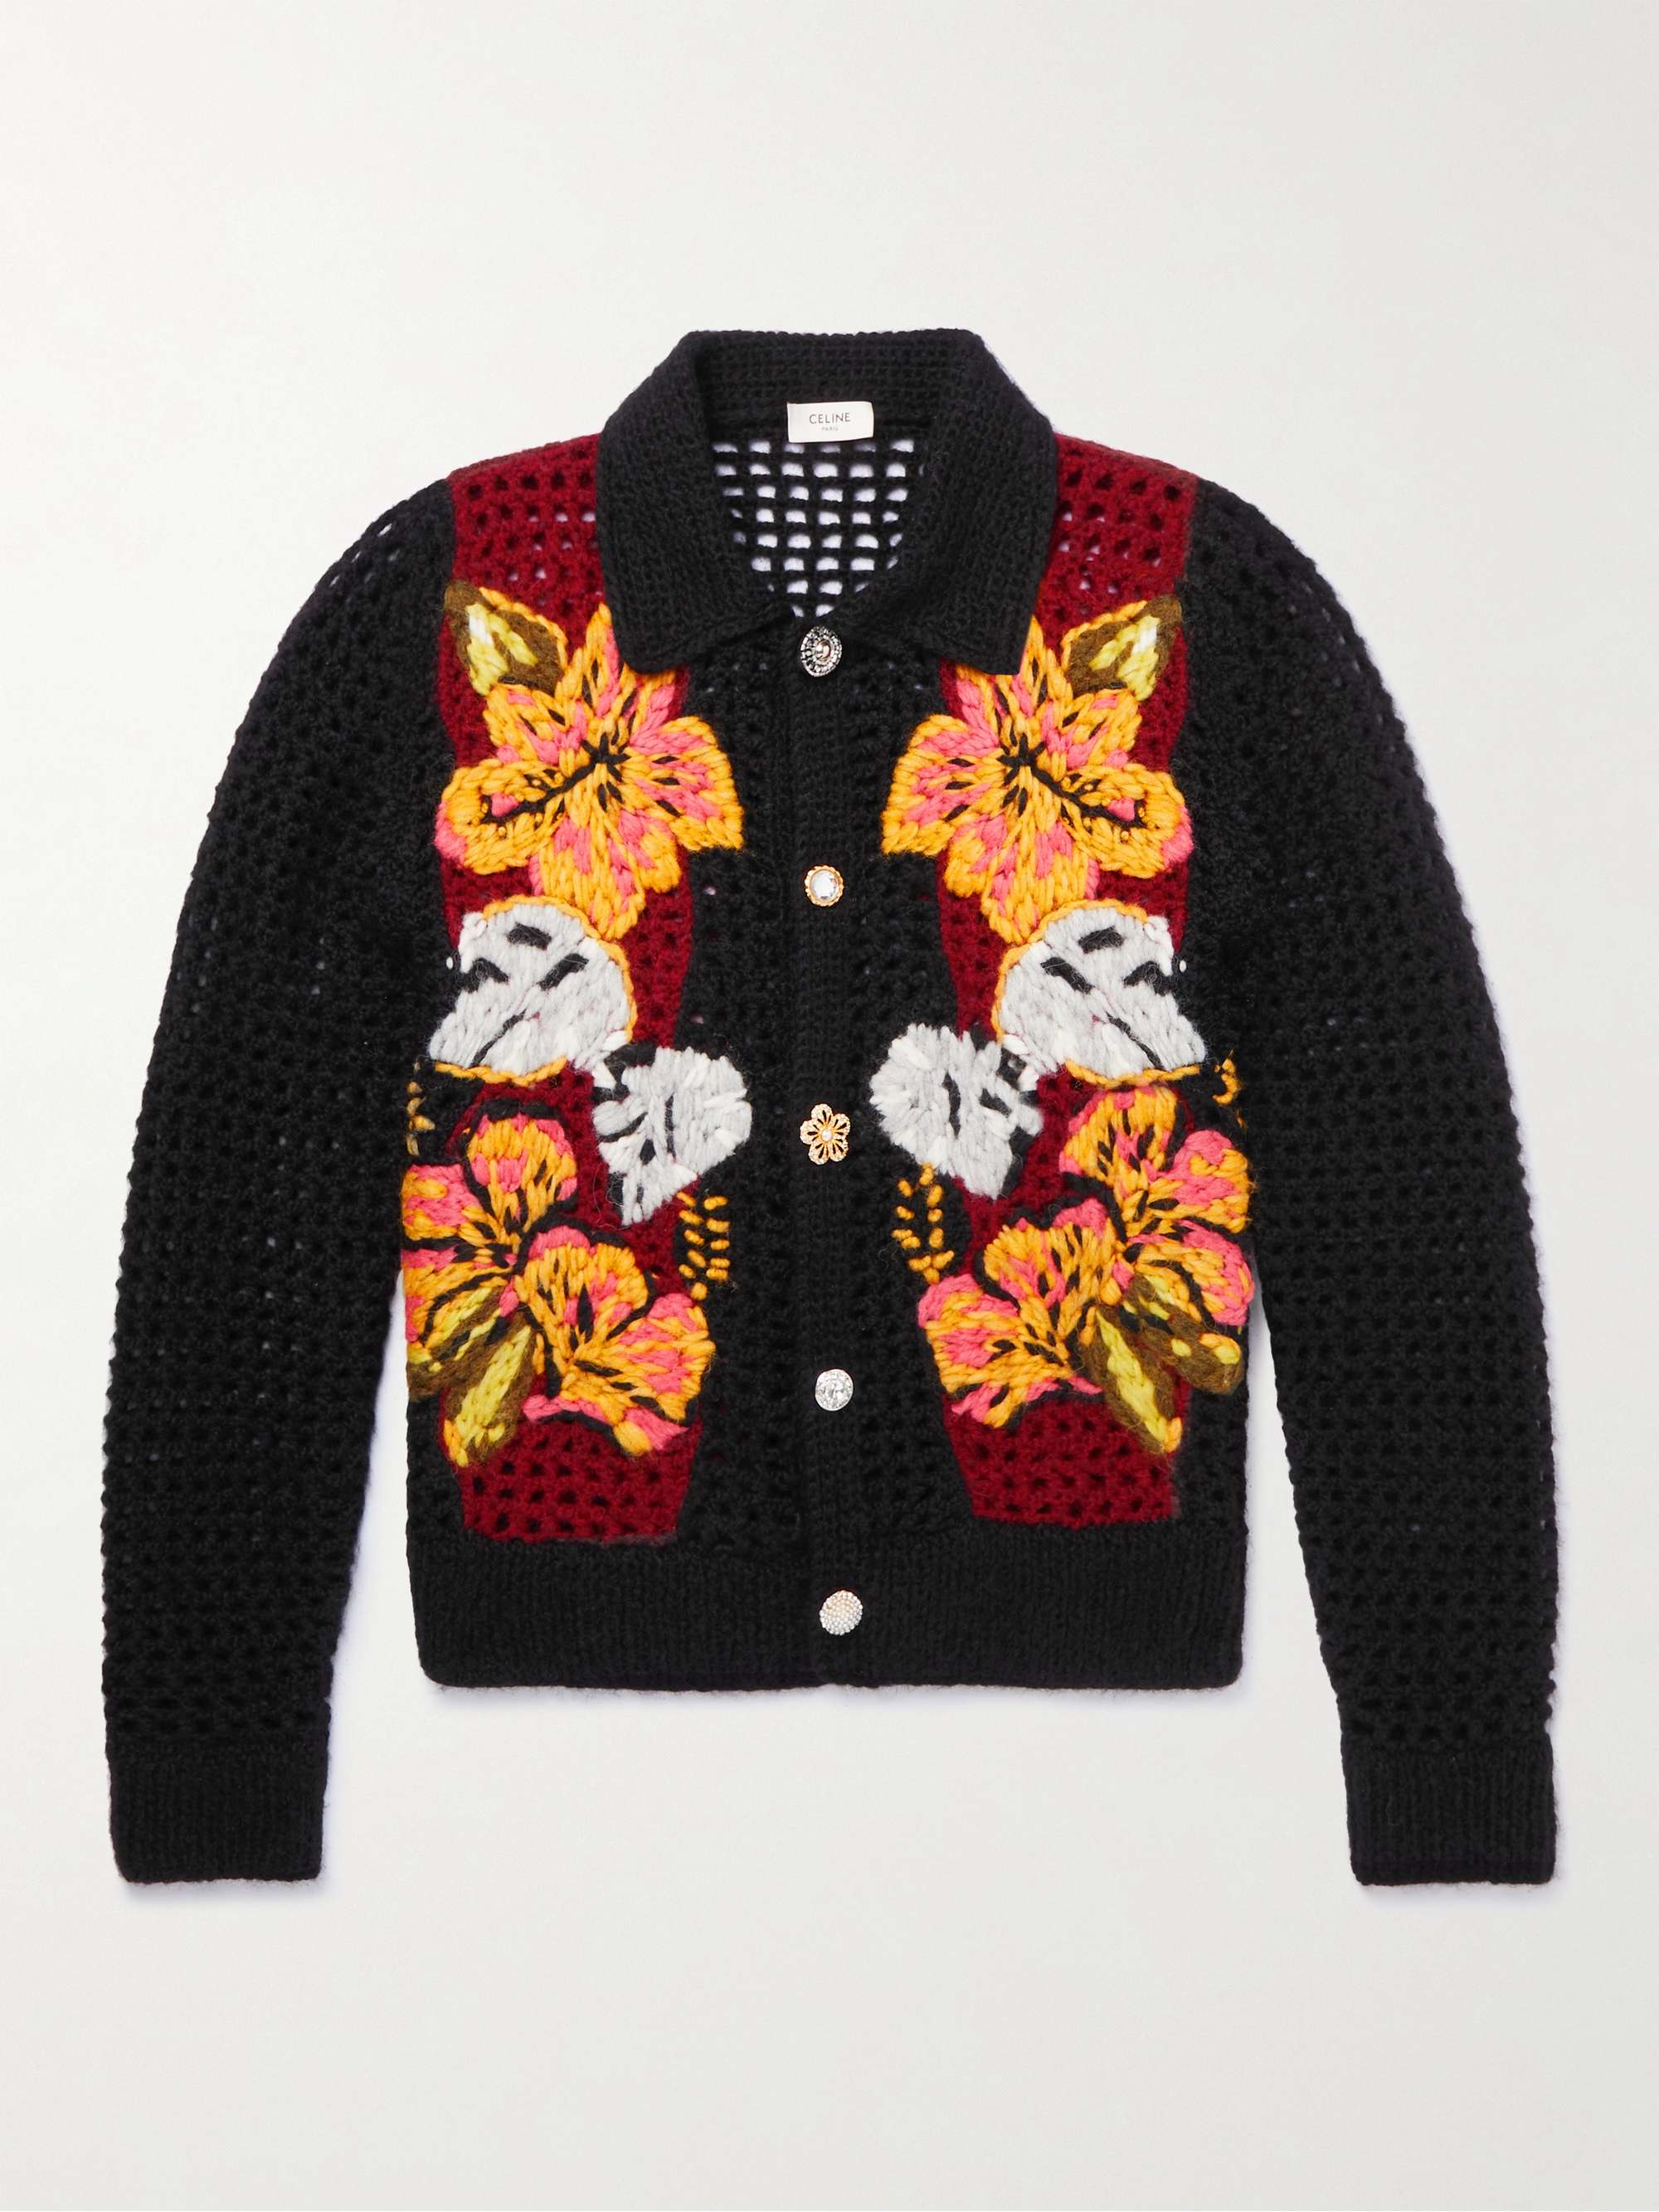 CELINE HOMME Embellished Crocheted Alpaca-Blend Cardigan